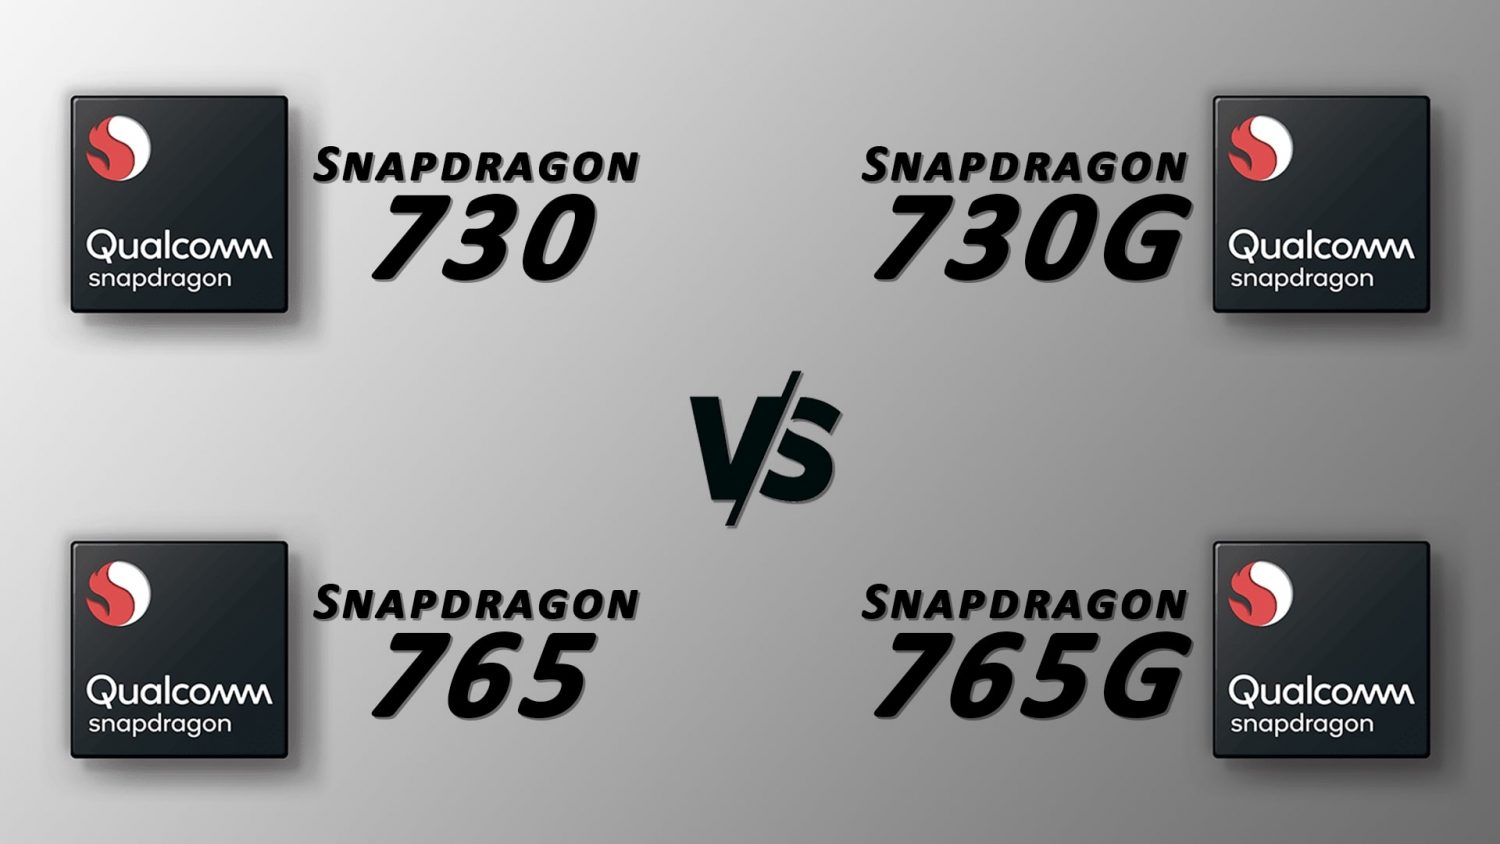 Snapdragon 765 vs 765g vs Snapdragon 730 vs 730g